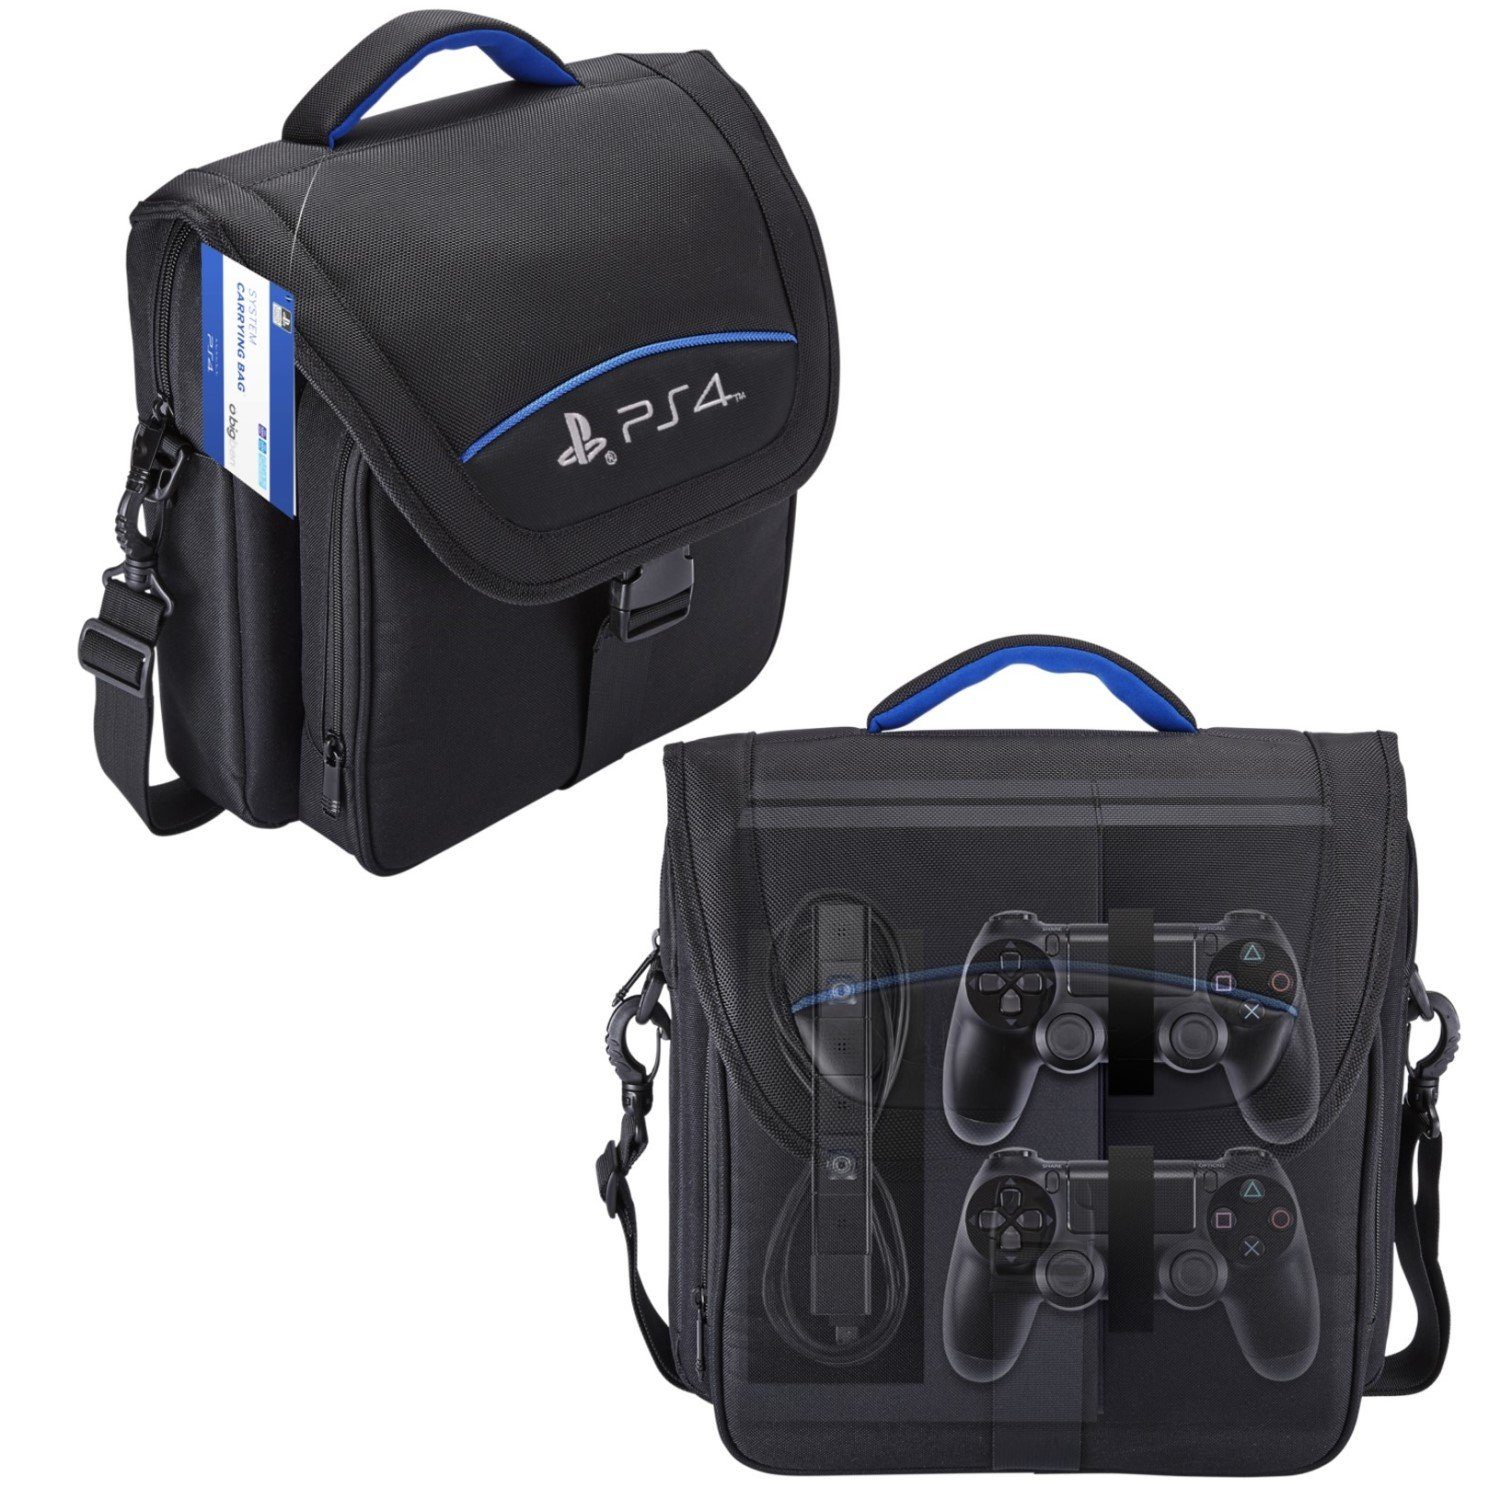 BigBen Konsolen-Tasche Official Licensed Transport-Tasche Schutz-Hülle Case, Aufbewahrung für Sony PS4 + Controller + Spiele + Zubehör